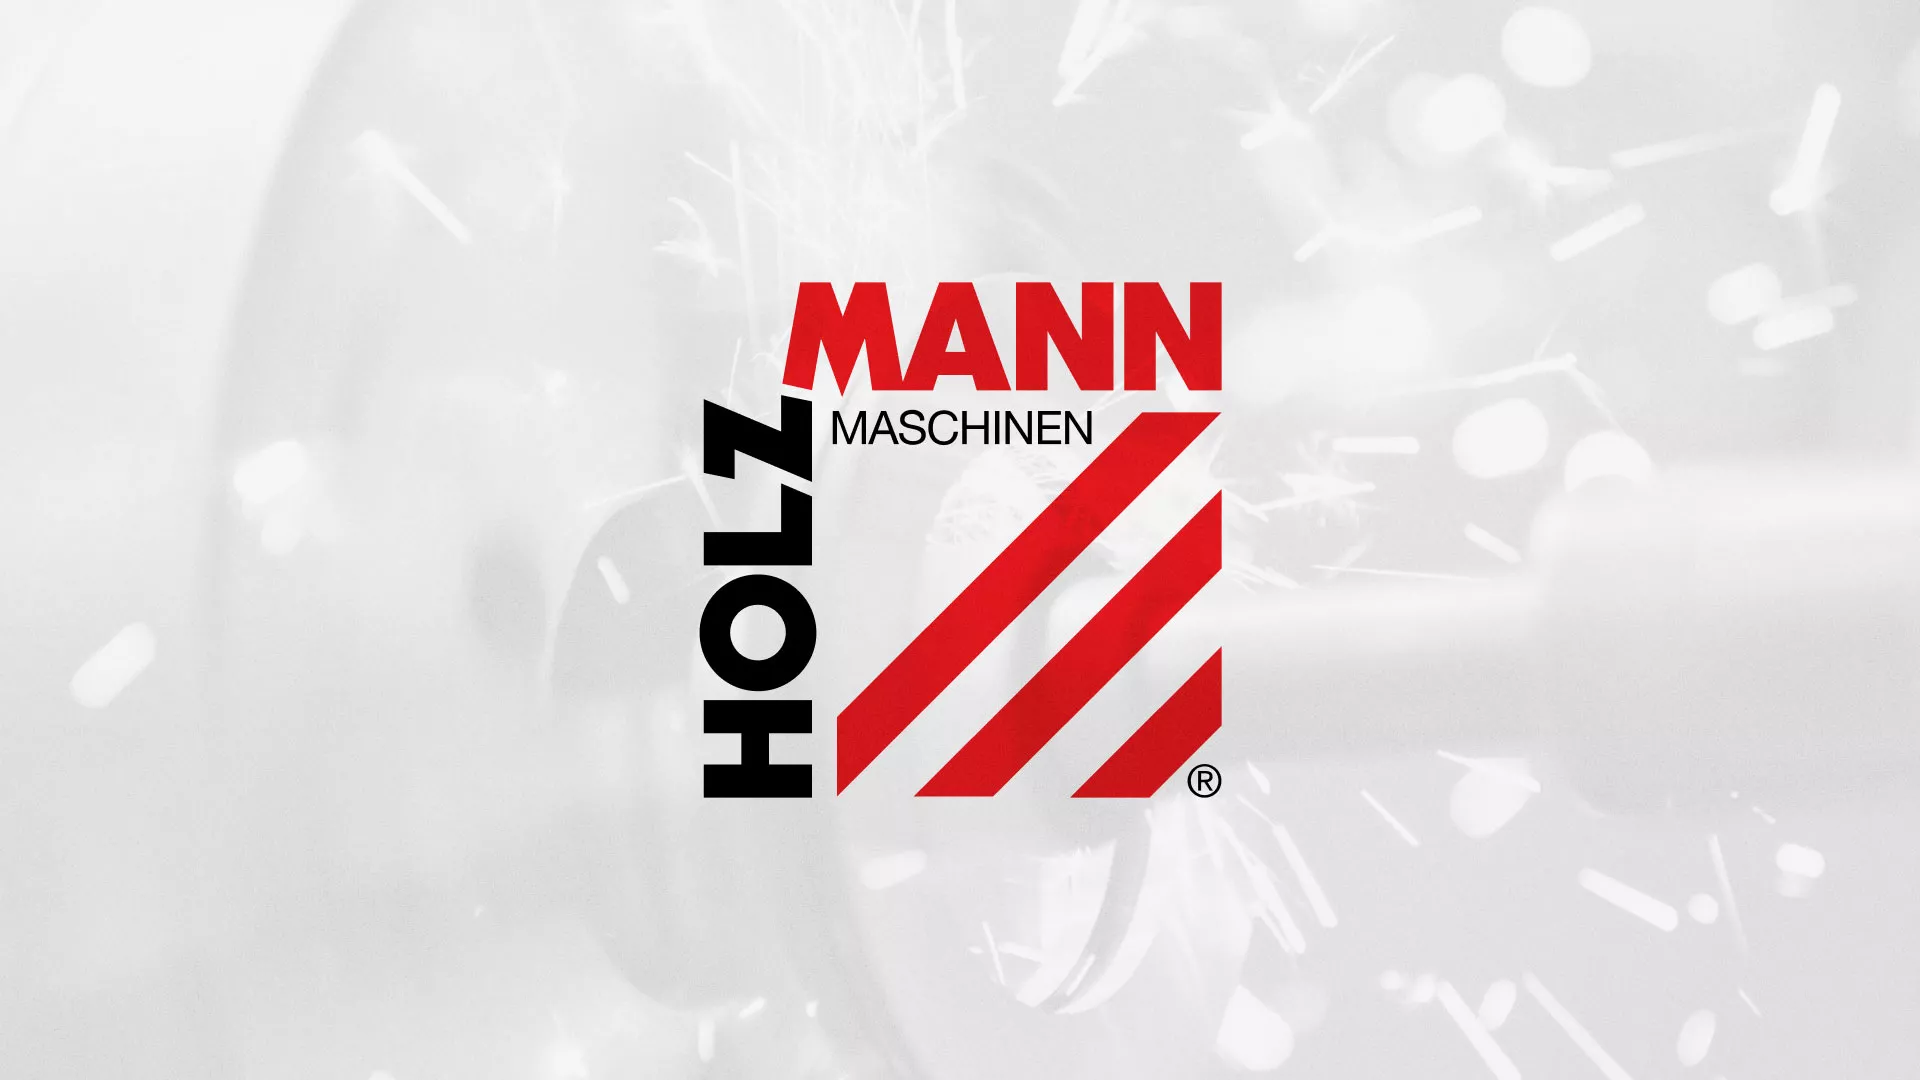 Создание сайта компании «HOLZMANN Maschinen GmbH» в Шарье